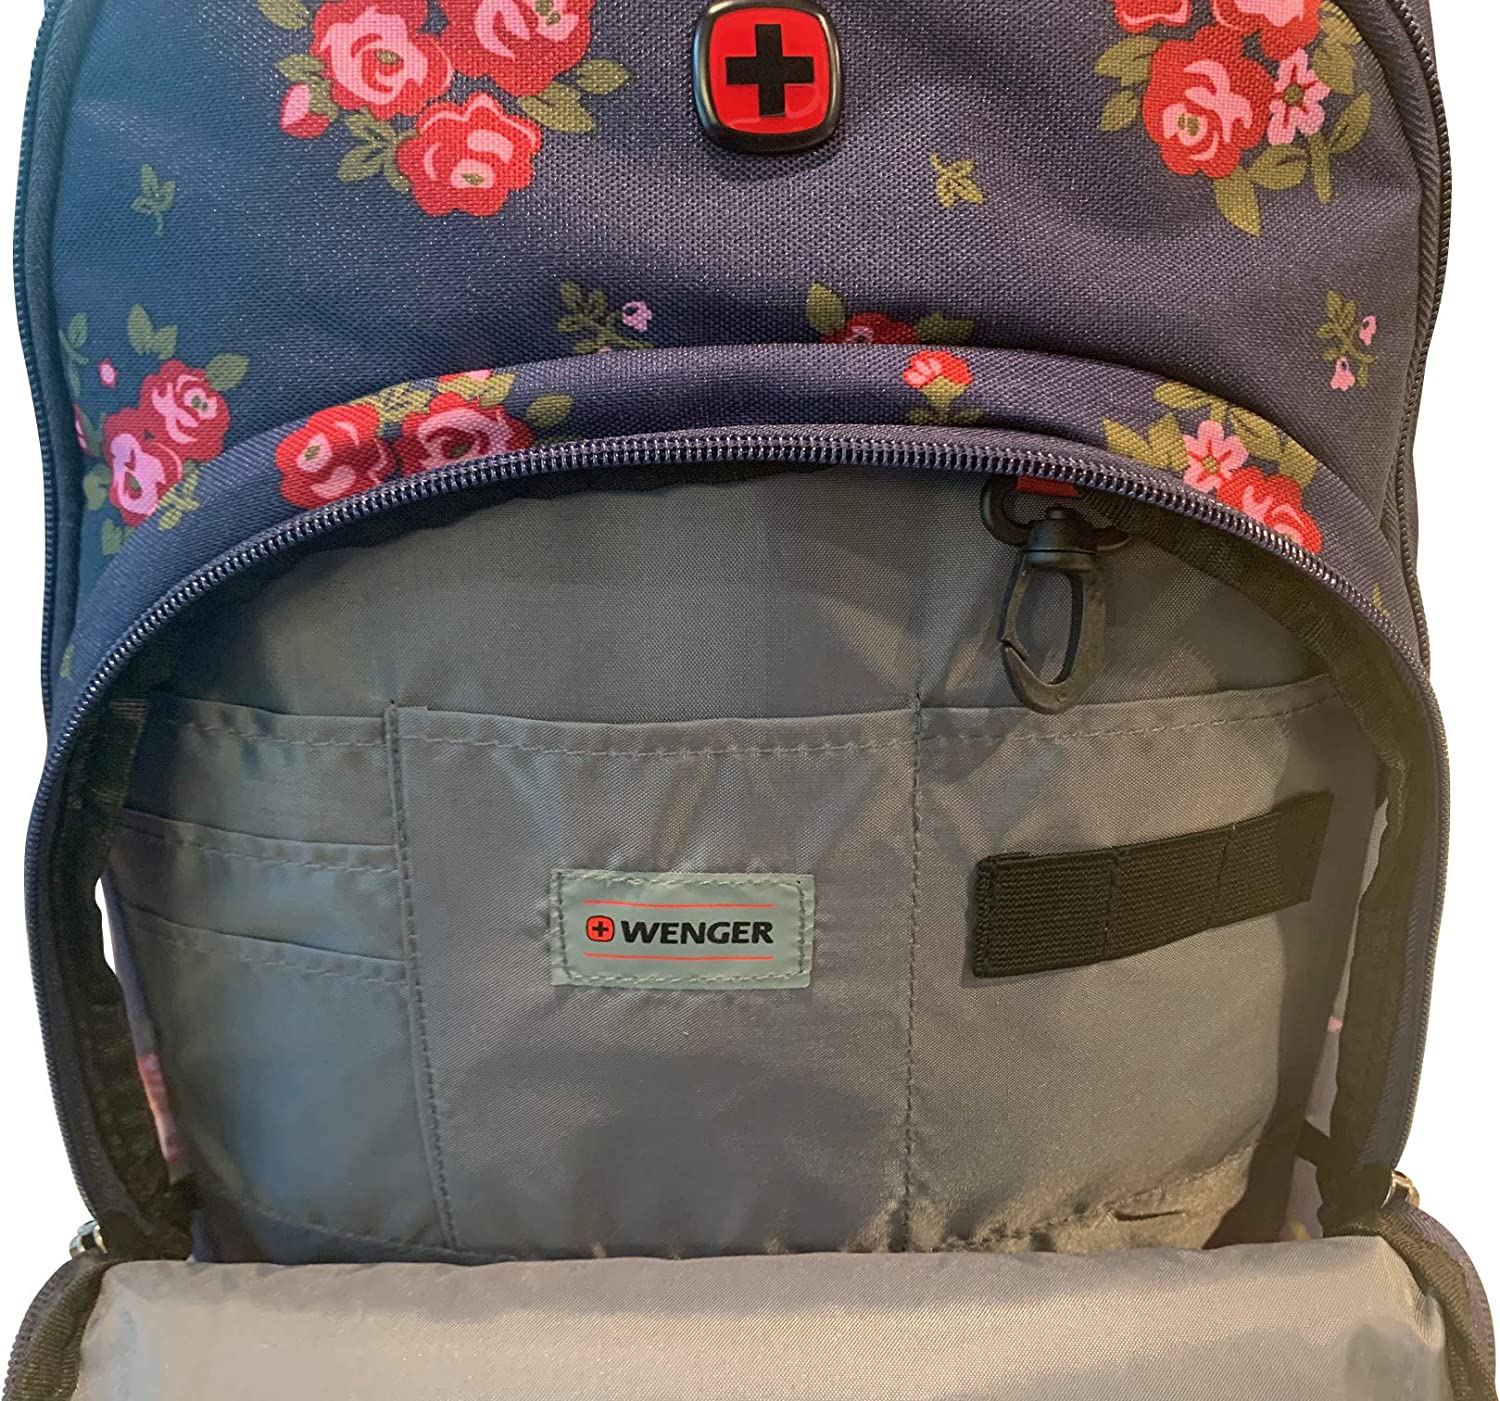 Wenger Upload Backpack With 16" Laptop Pocket And Tablet Pocket, Navy Floral Print